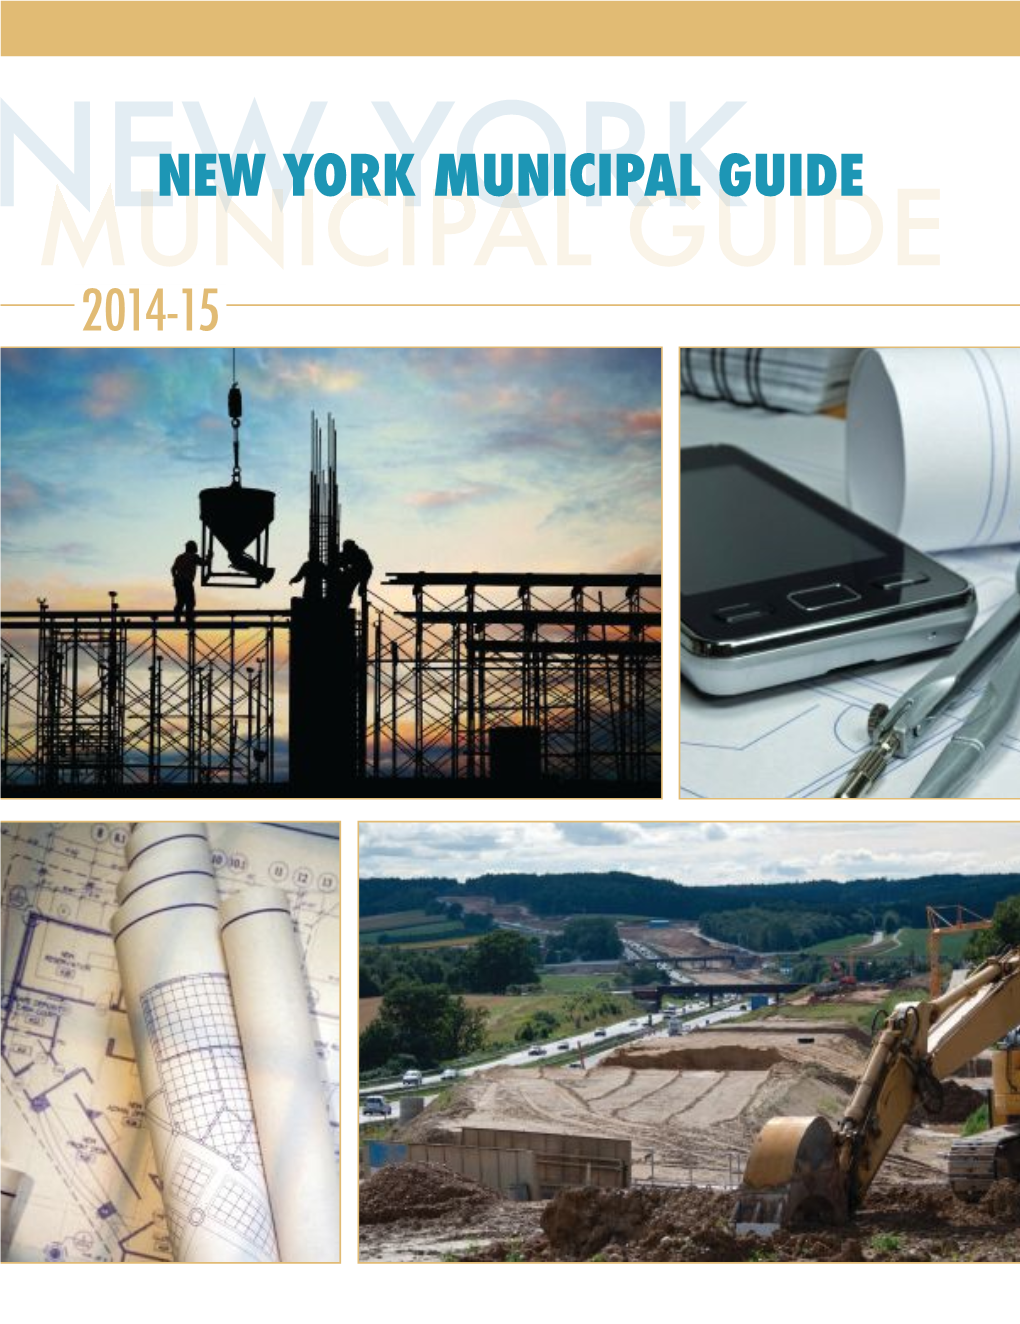 NEW YORK MUNICIPAL GUIDE NEWMUNICIPAL YORK GUIDE 2014-15 2014-15 New York Municipal Guide • Table of Contents •